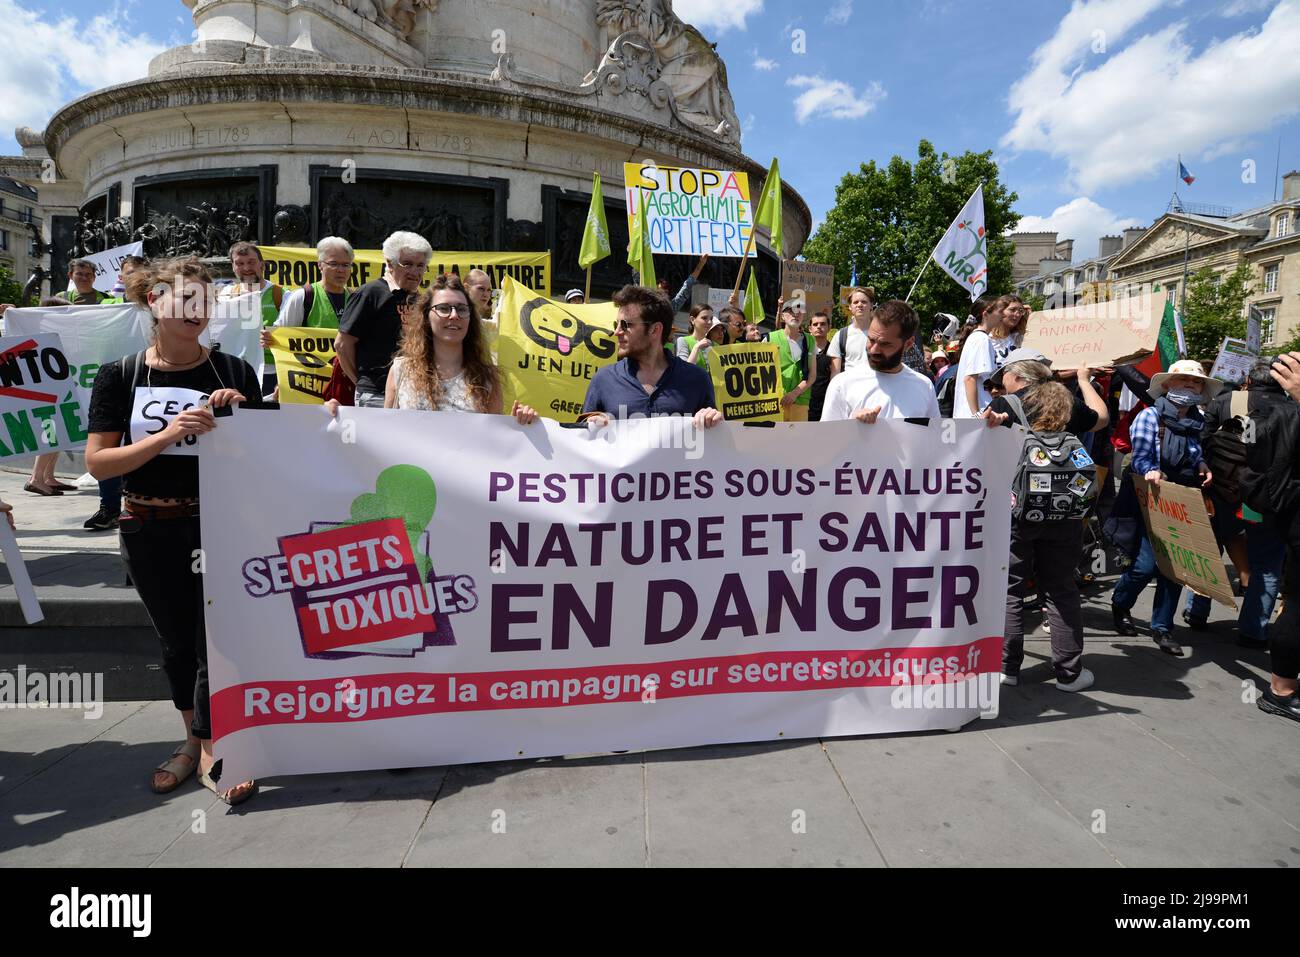 La marcha contra Monsanto tomó un giro muy politizado En 2022 en París, estuvieron presentes los representantes de EELV y LFI Melenchon Rousseau, Bayou Foto de stock